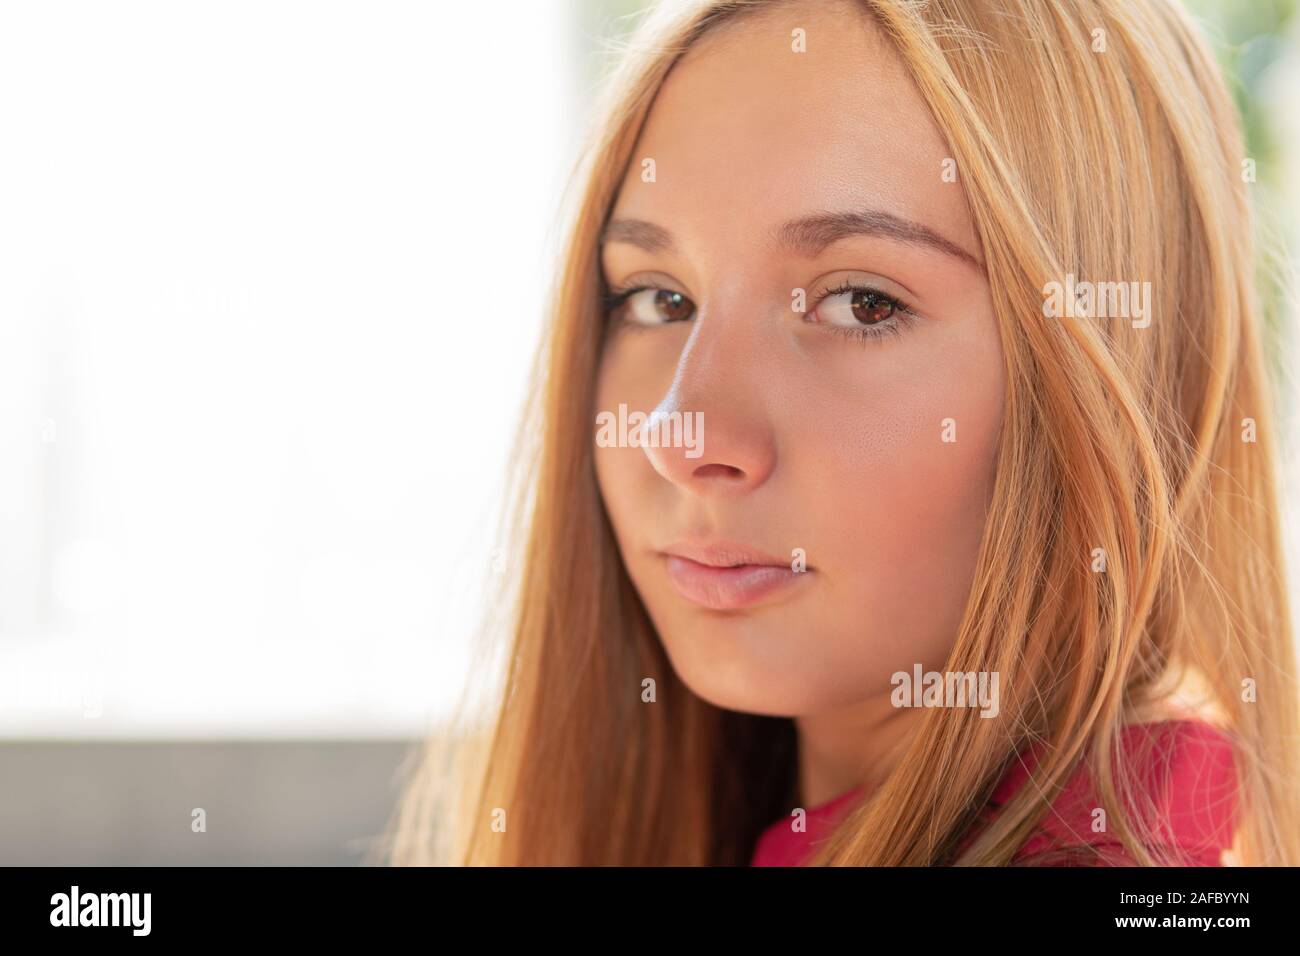 Closeup portrait d'une belle jeune fille à l'extérieur, sur un arrière-plan flou. Profondeur de champ Banque D'Images